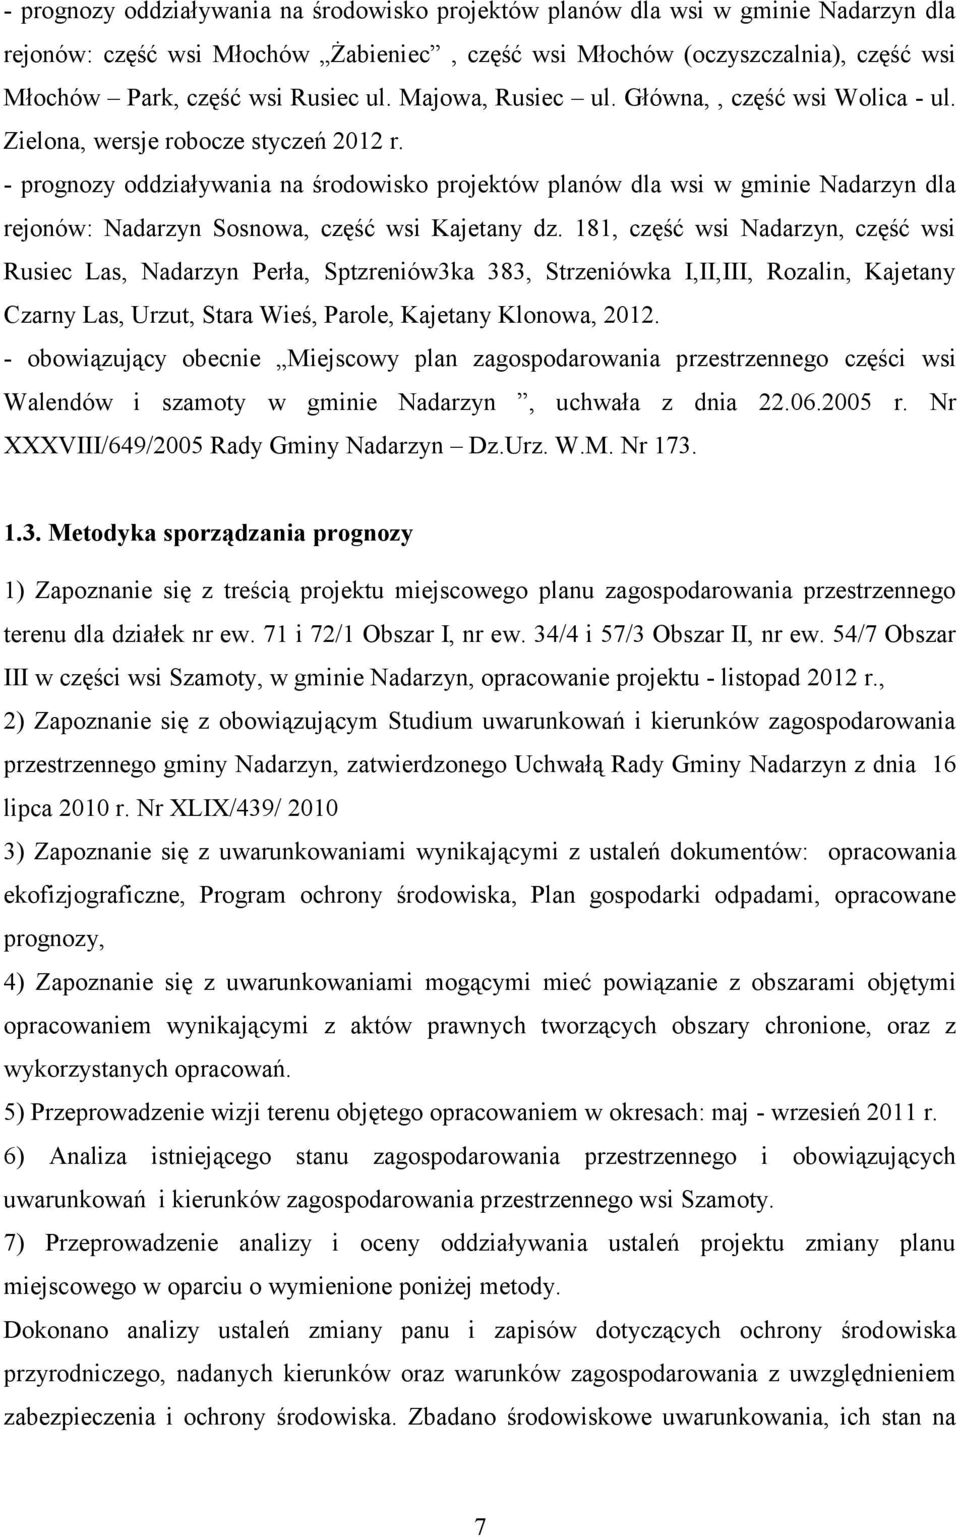 - prognozy oddziaływania na środowisko projektów planów dla wsi w gminie Nadarzyn dla rejonów: Nadarzyn Sosnowa, część wsi Kajetany dz.